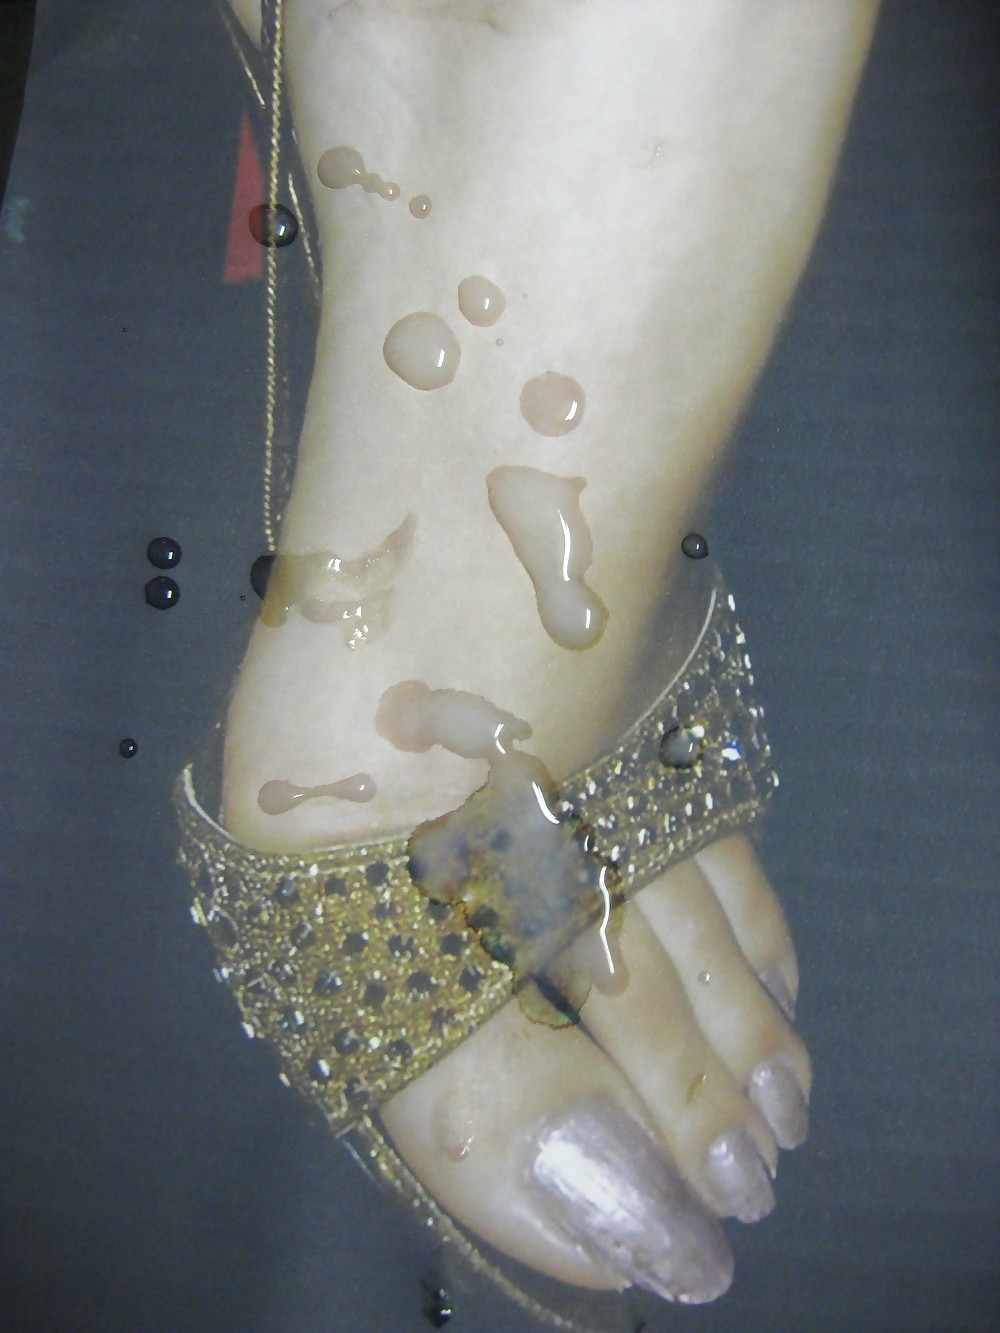 パキスタン人女性の足にザーメンをかけるGメン
 #10869188